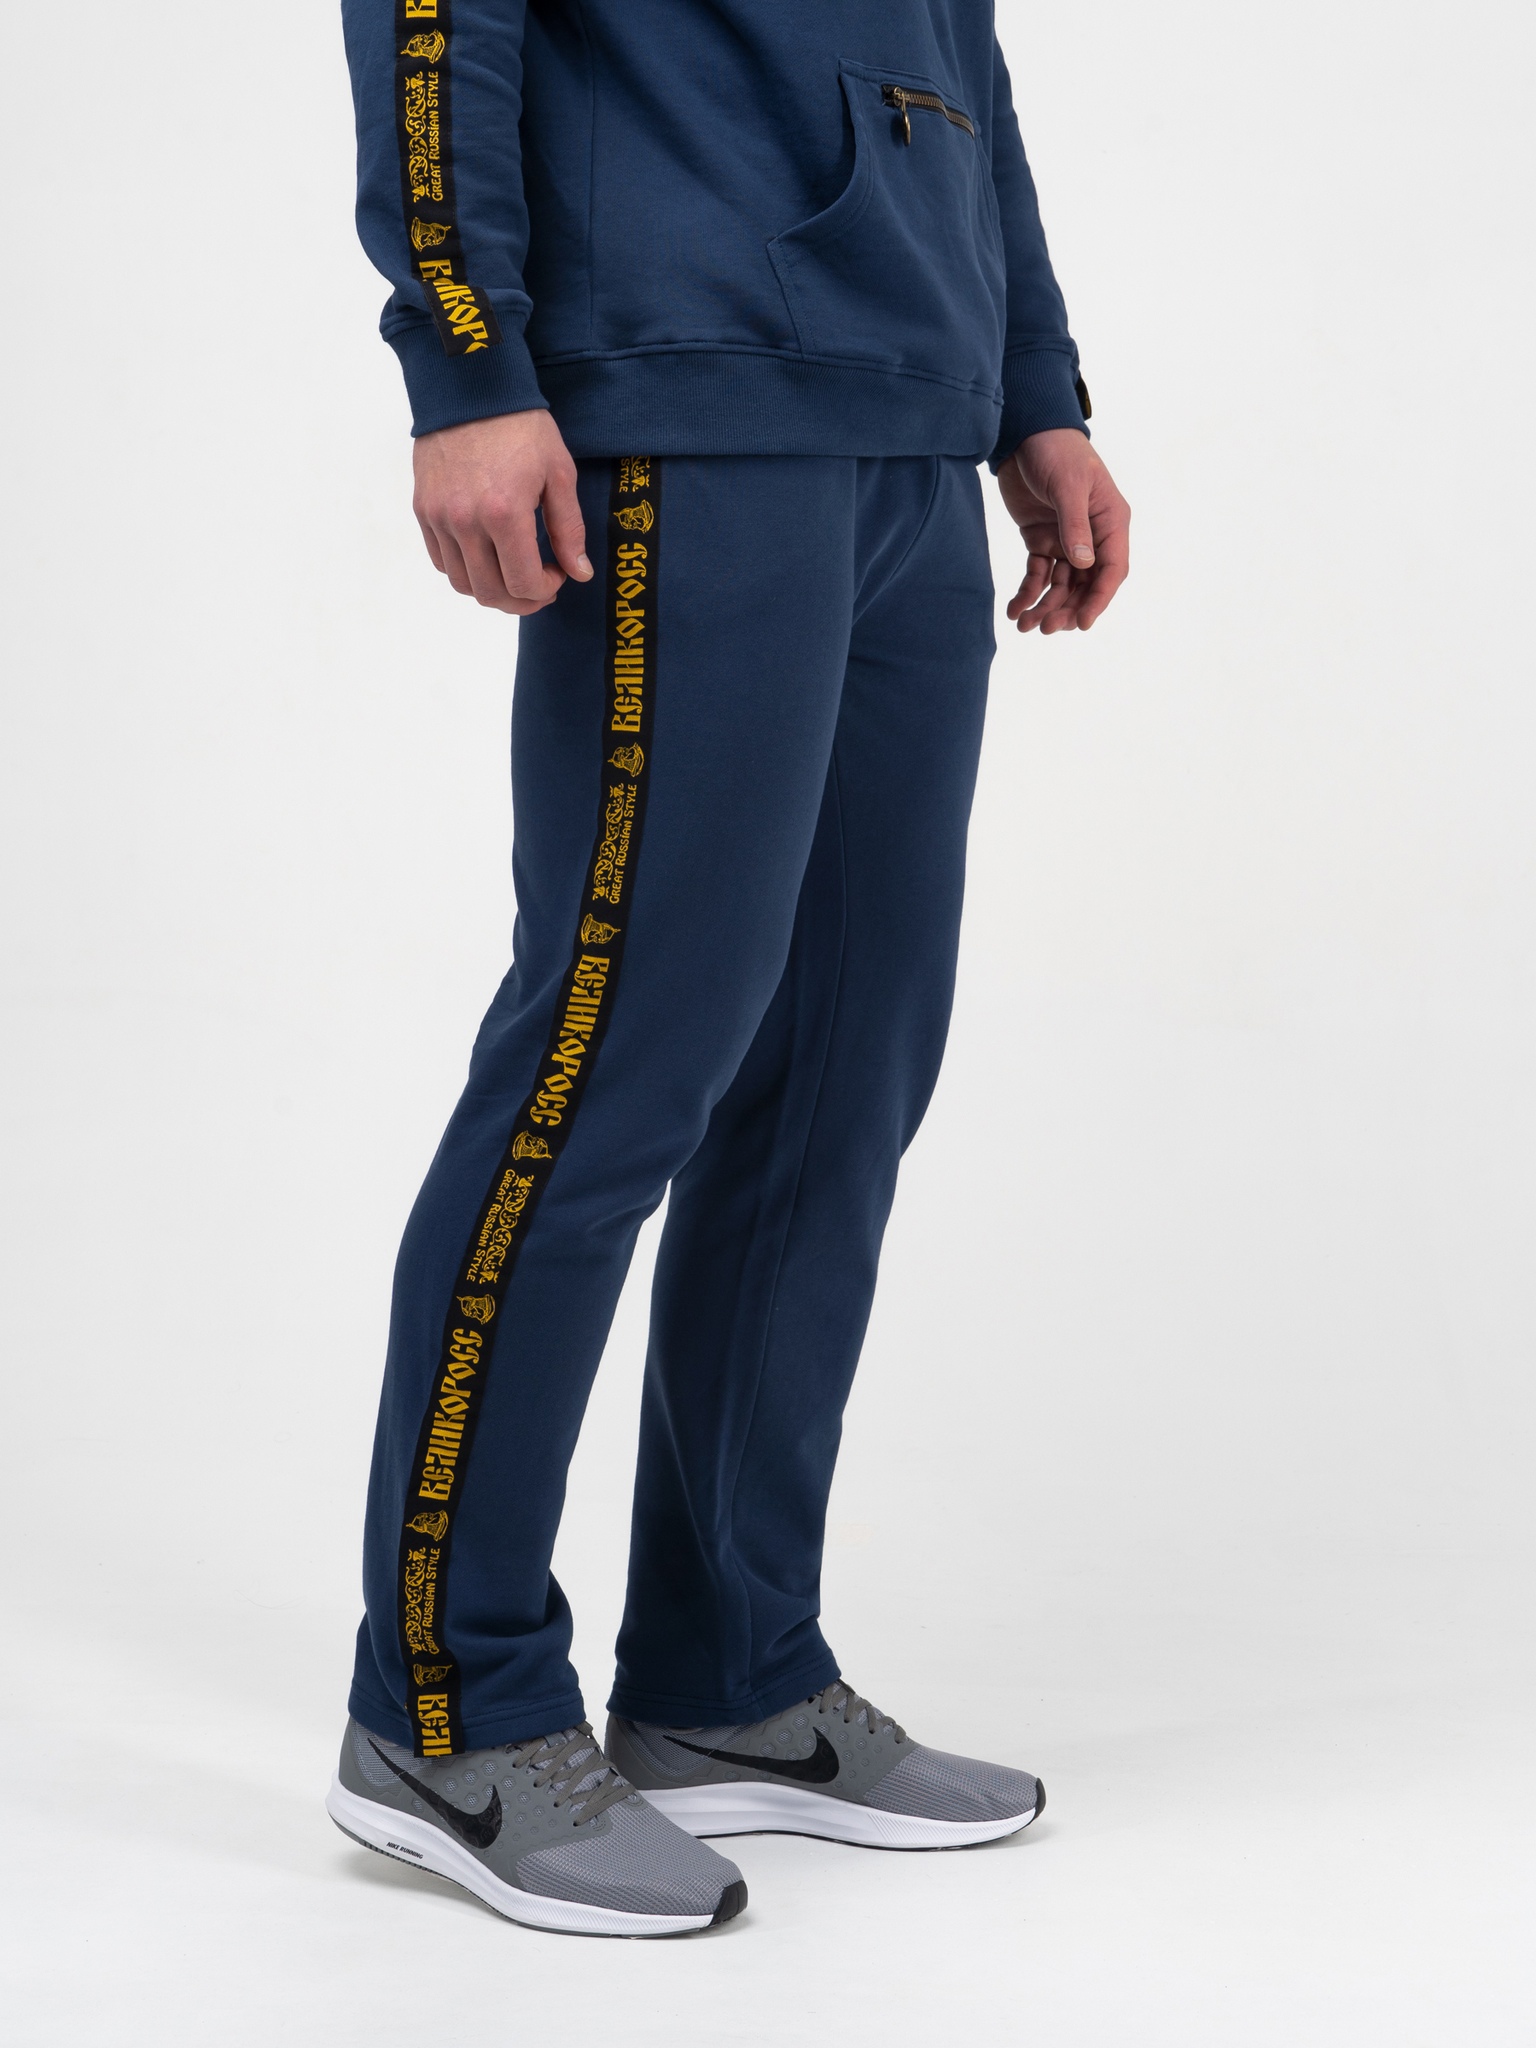 фото Спортивные брюки мужские великоросс чемпион синие 54 ru